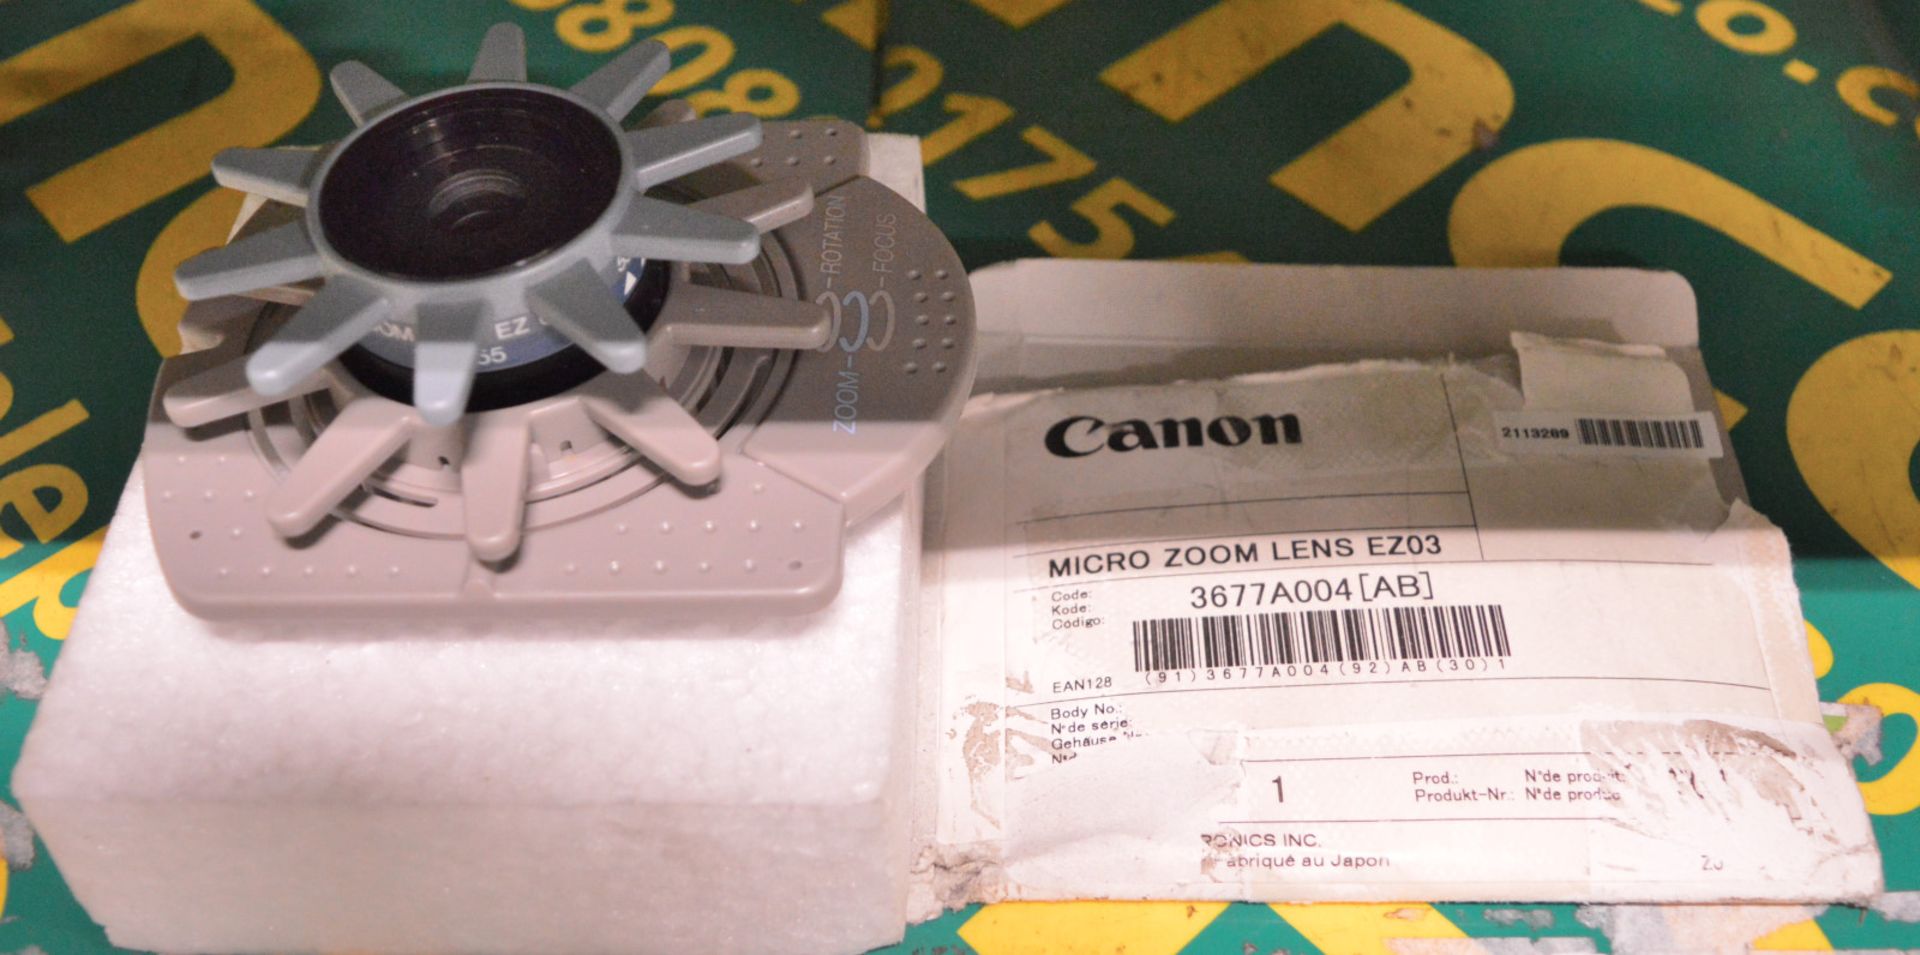 Canon Micro Zoom Lens EZ03 - Microfilm Scanner.